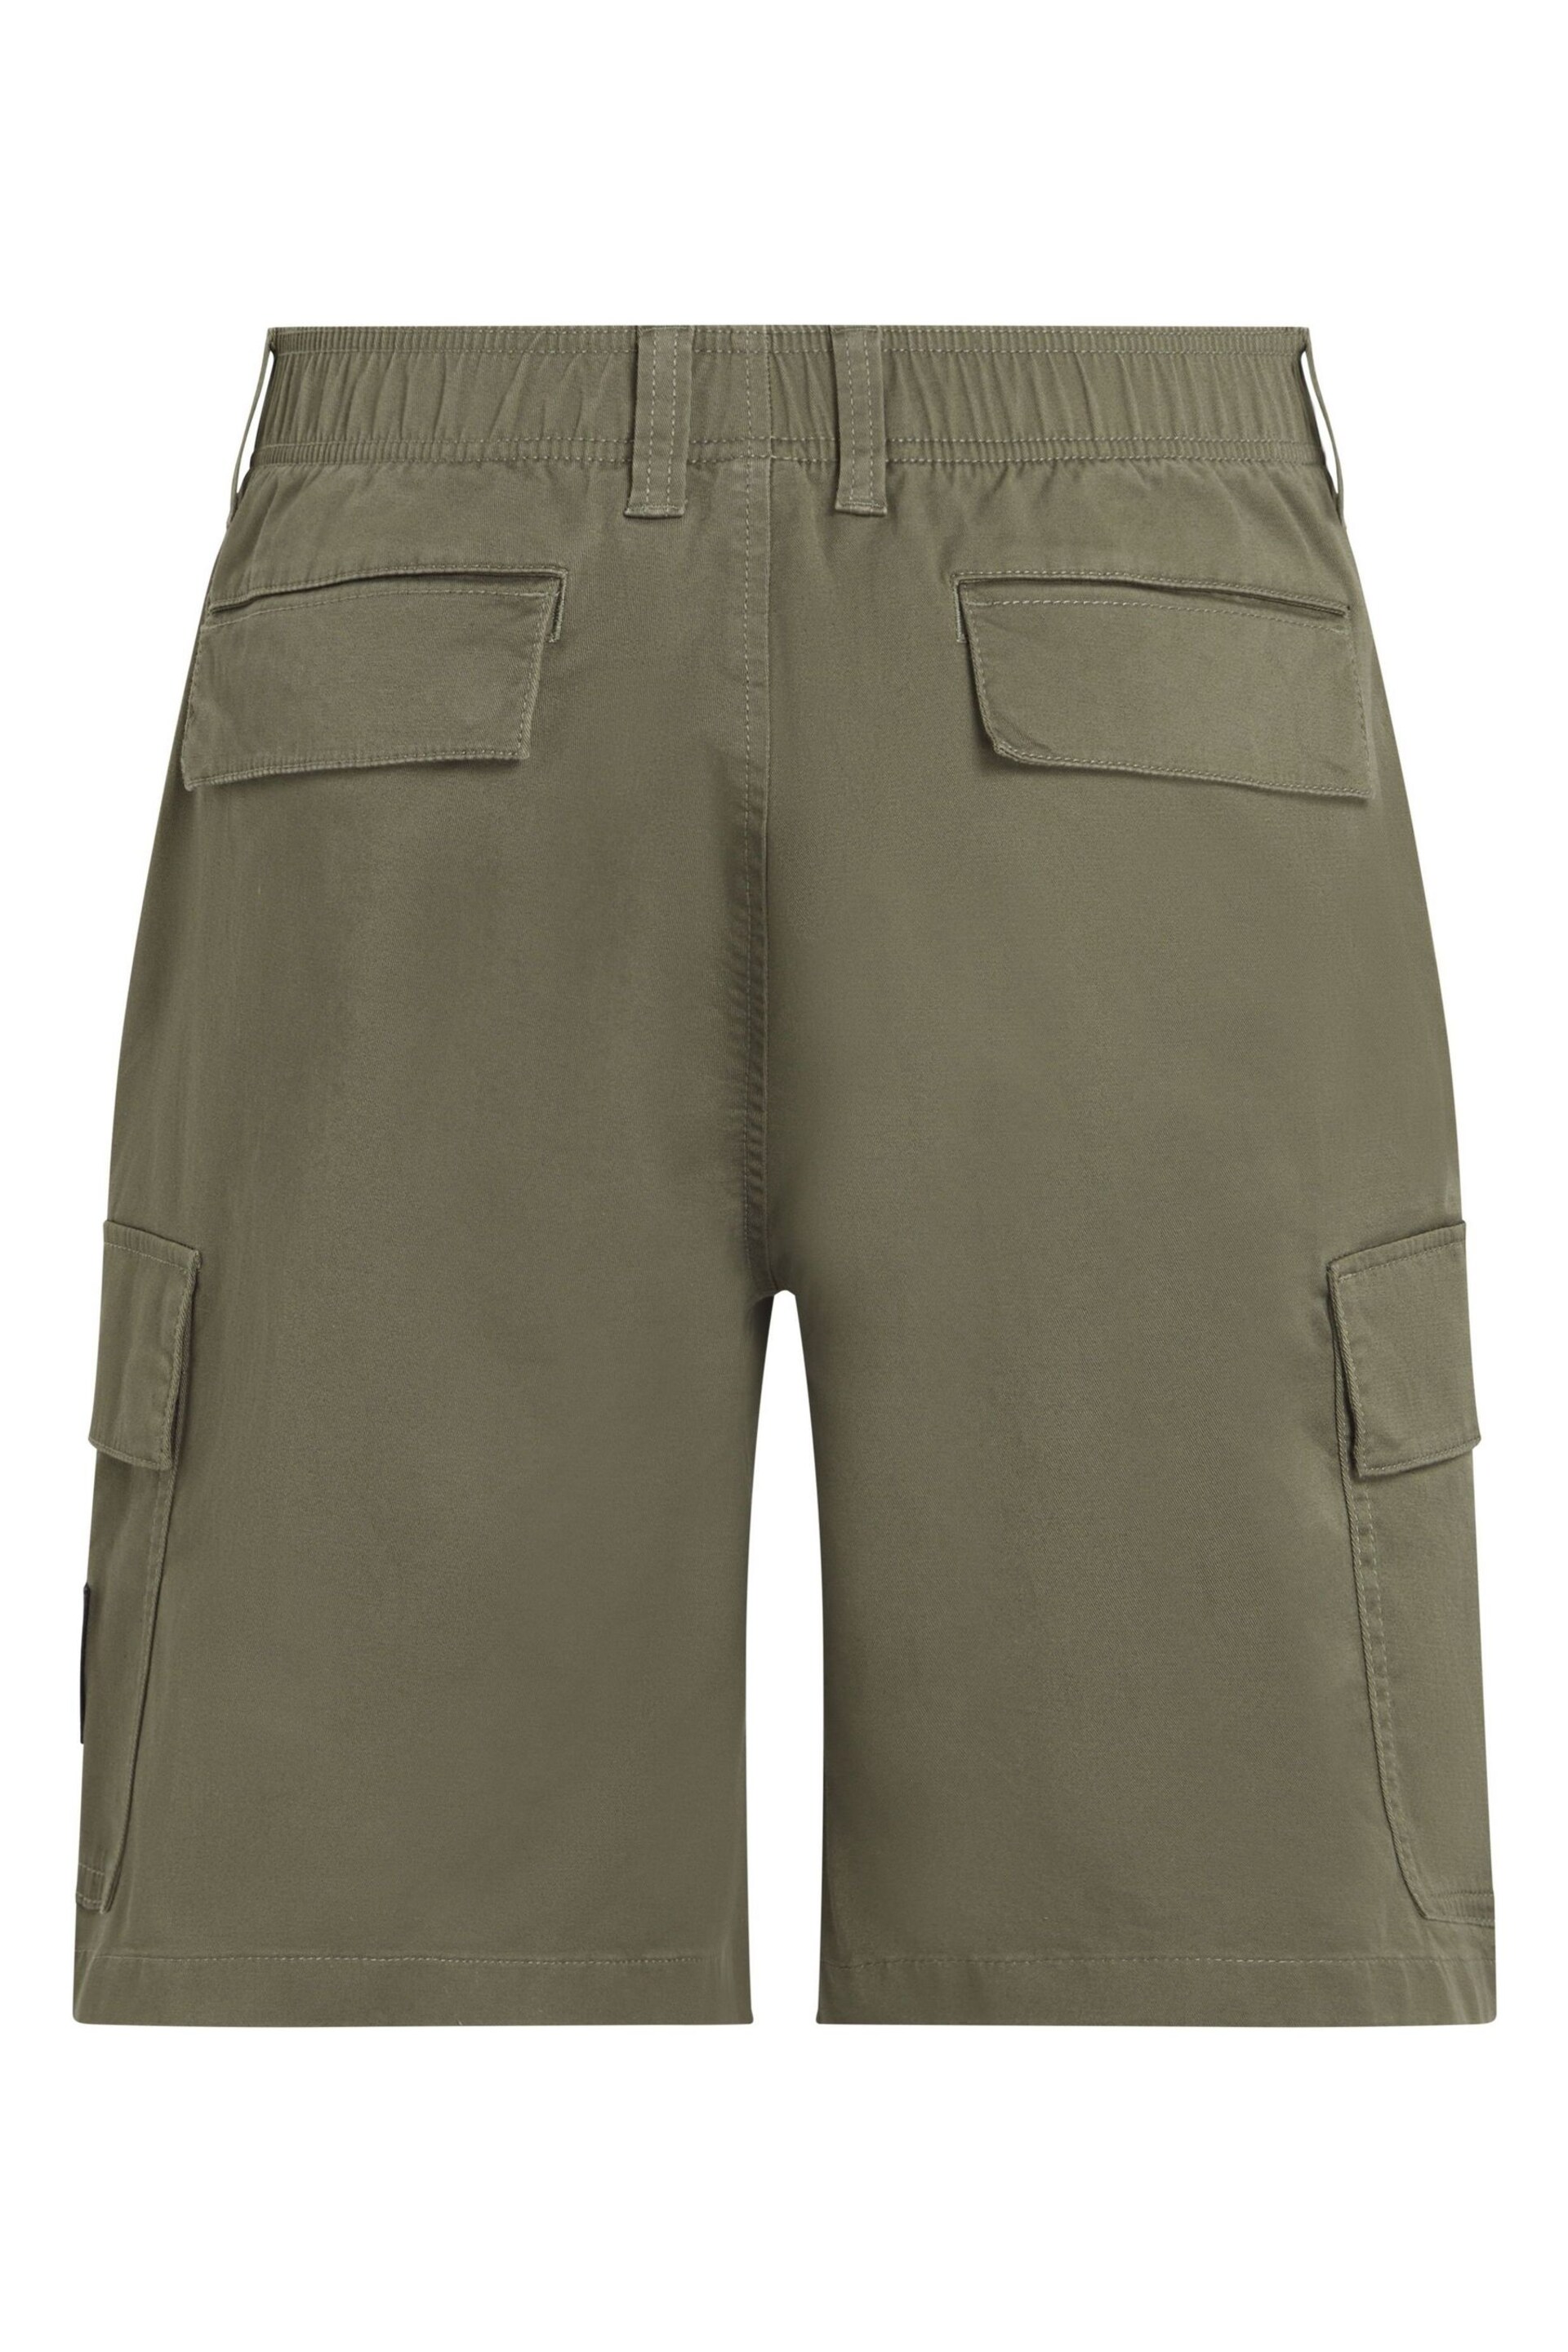 Calvin Klein Green Cargo Woven Shorts - Image 5 of 6